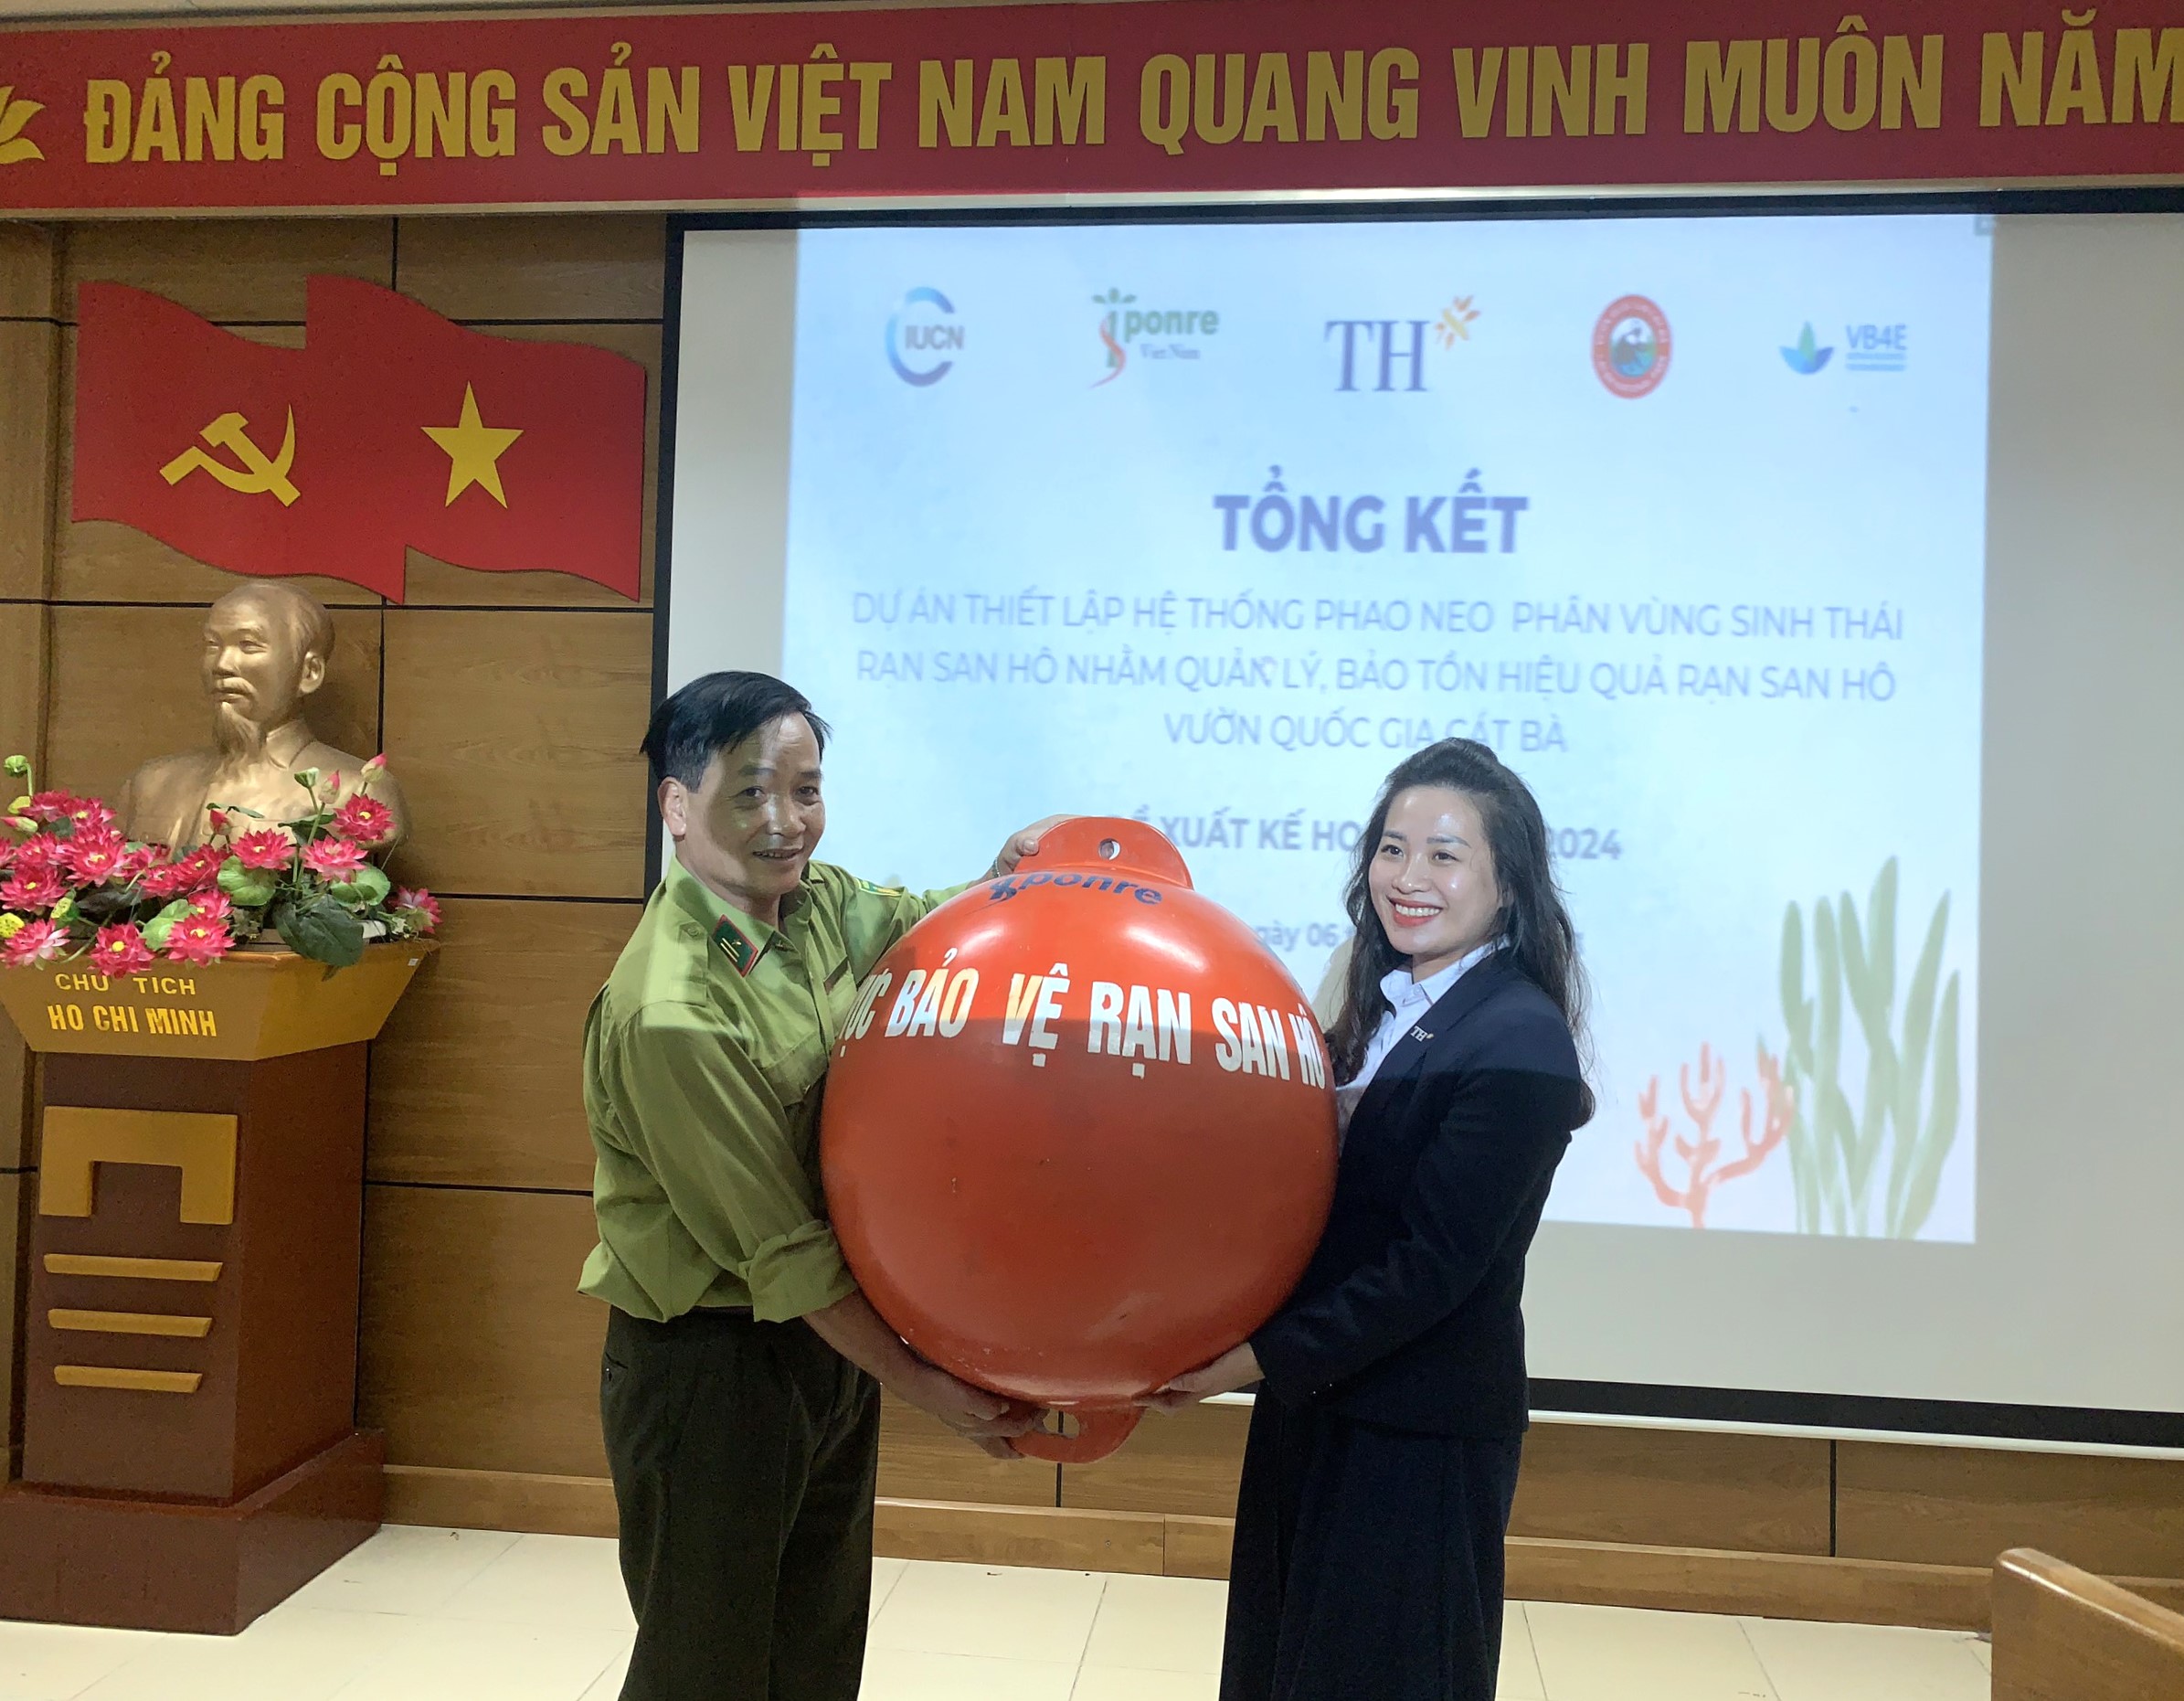 Bà Hoàng Thị Thanh Thủy - Giám đốc Phát biển bền vững Tập đoàn TH trao tặng phao neo cho đại diện VQG Cát Bà